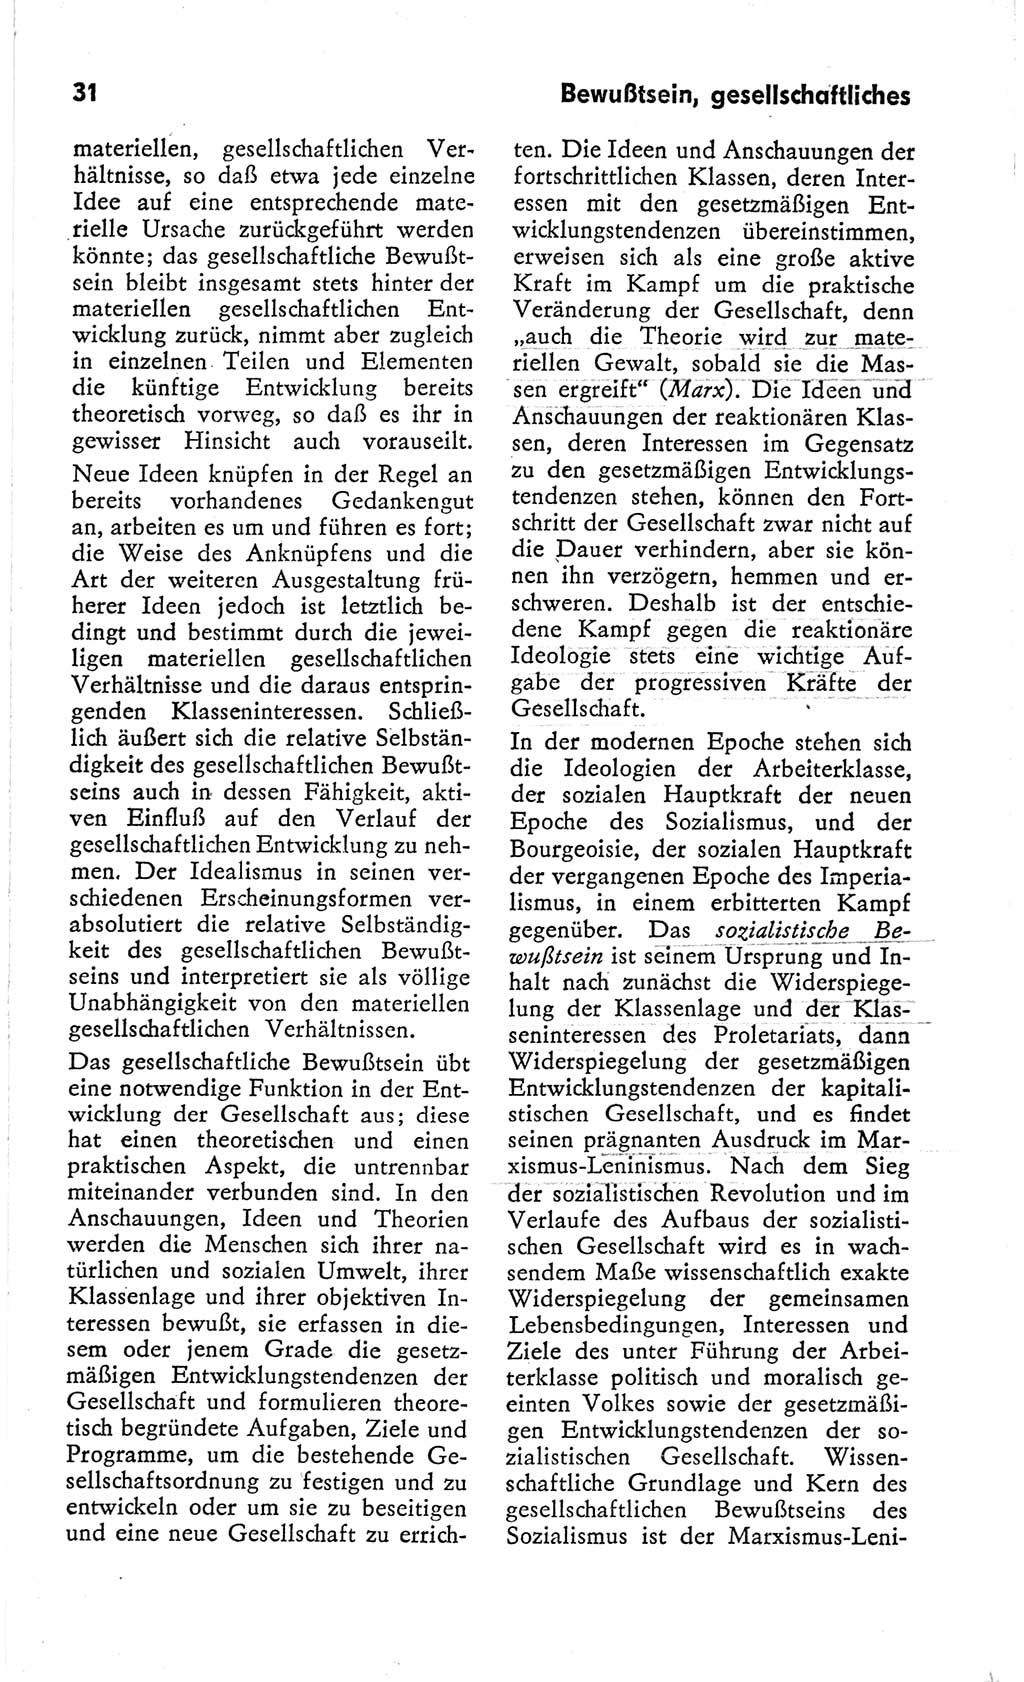 Kleines Wörterbuch der marxistisch-leninistischen Philosophie [Deutsche Demokratische Republik (DDR)] 1966, Seite 31 (Kl. Wb. ML Phil. DDR 1966, S. 31)